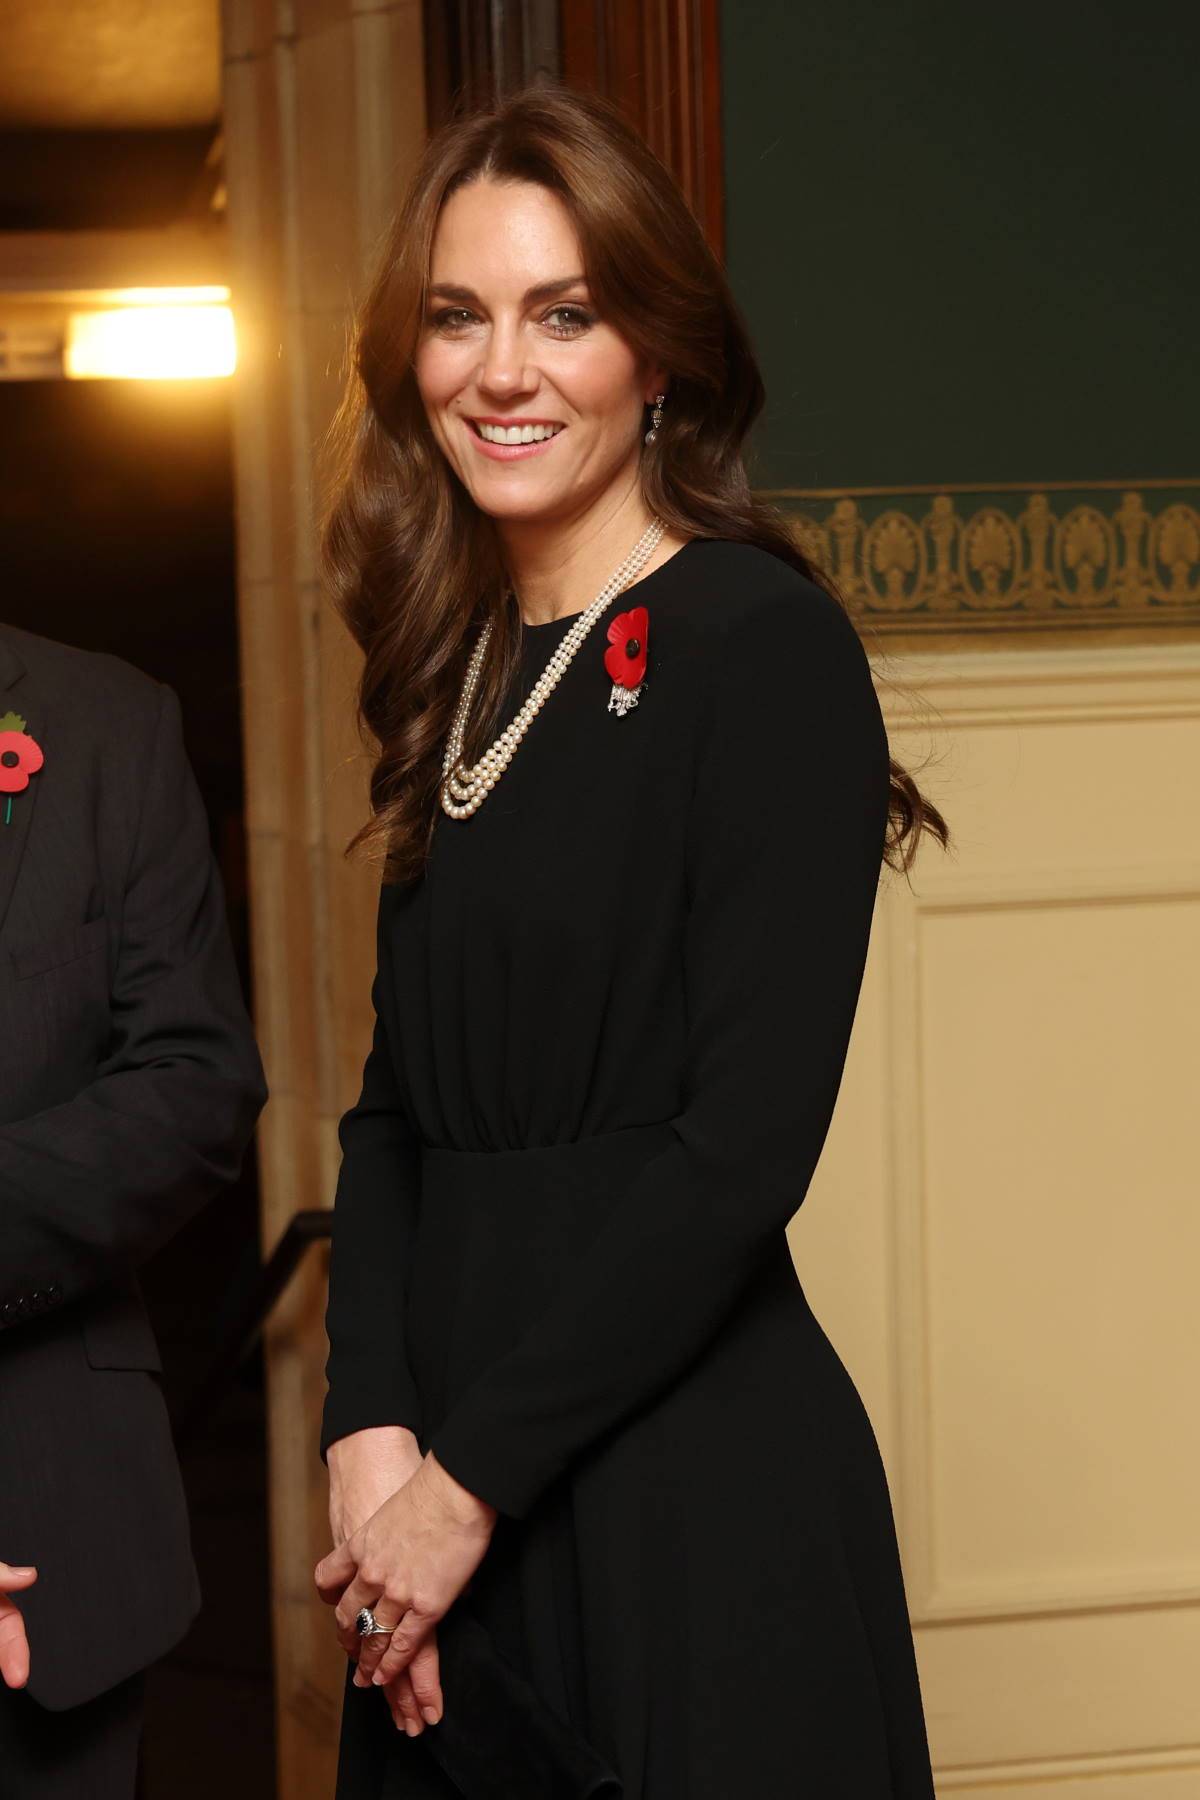 Księżna Kate w kolczykach przypominających broszkę Elżbiety II.  Biżuteria Elżbiety II stanowi częstą inspirację przy wyborze ozdób przez żonę księcia Williama. Tym razem Kate Middleton nosi kolczyki, ktore wyglądają jak dawna broszka. 